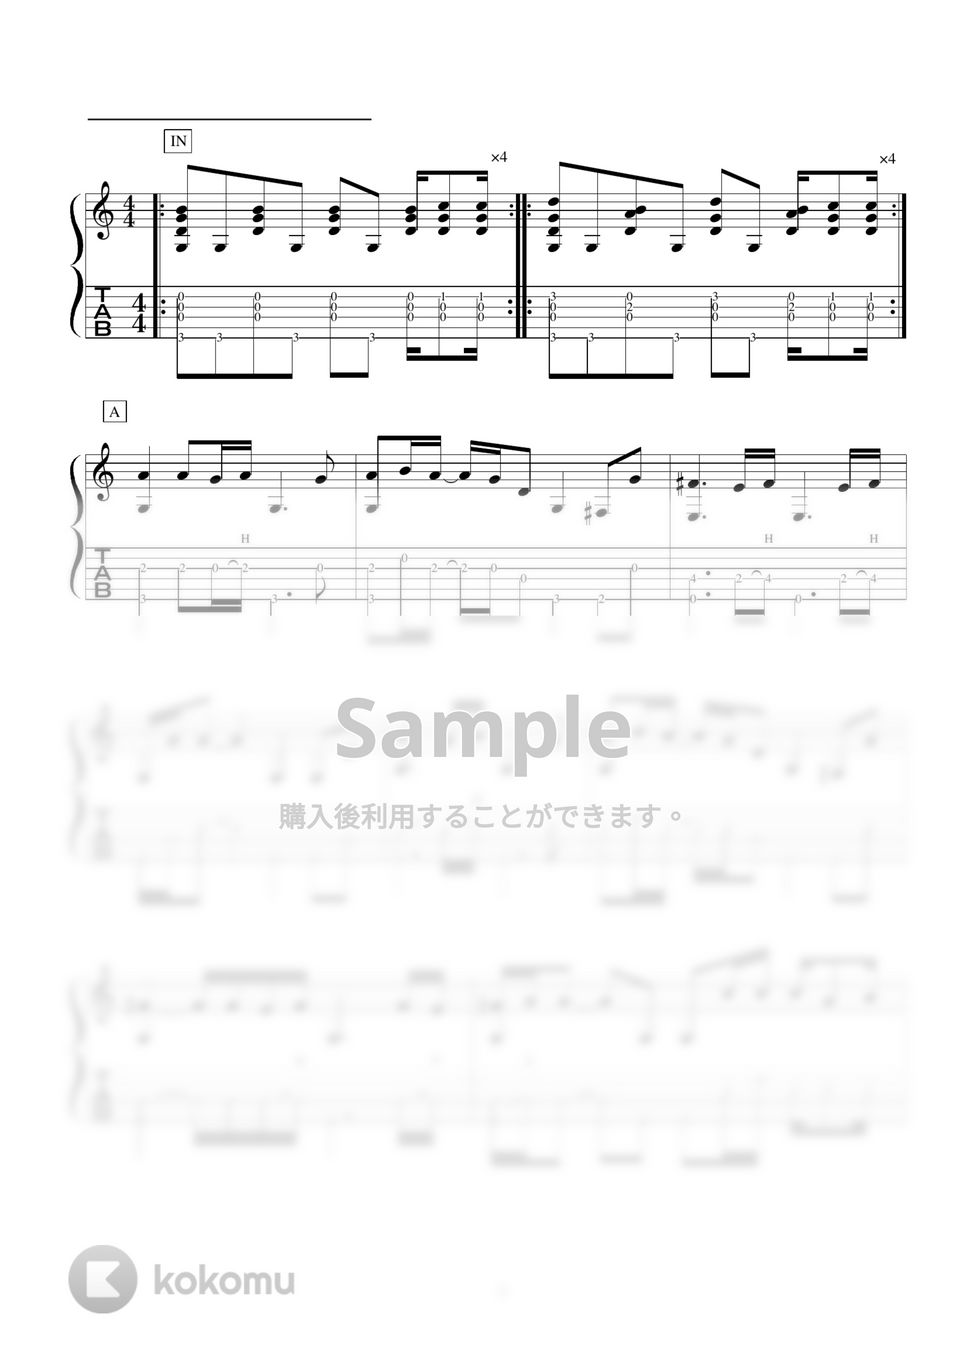 レミオロメン - 粉雪 アコギソロギター演奏動画付TAB譜 by バイトーン音楽教室